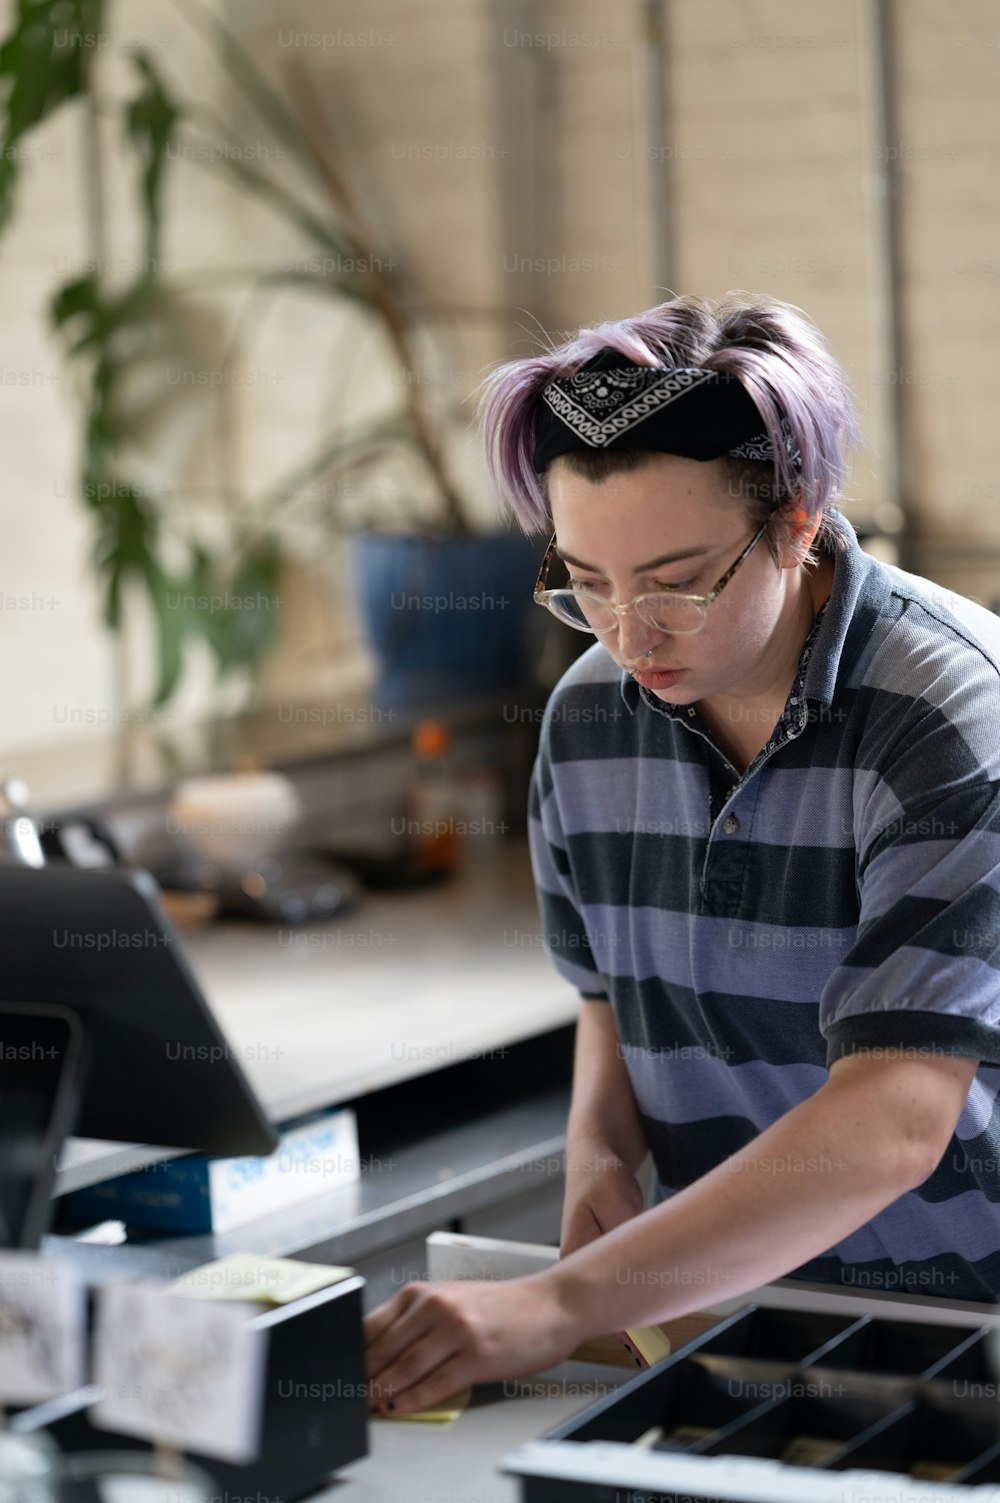 Un hombre con cabello morado está trabajando en una computadora